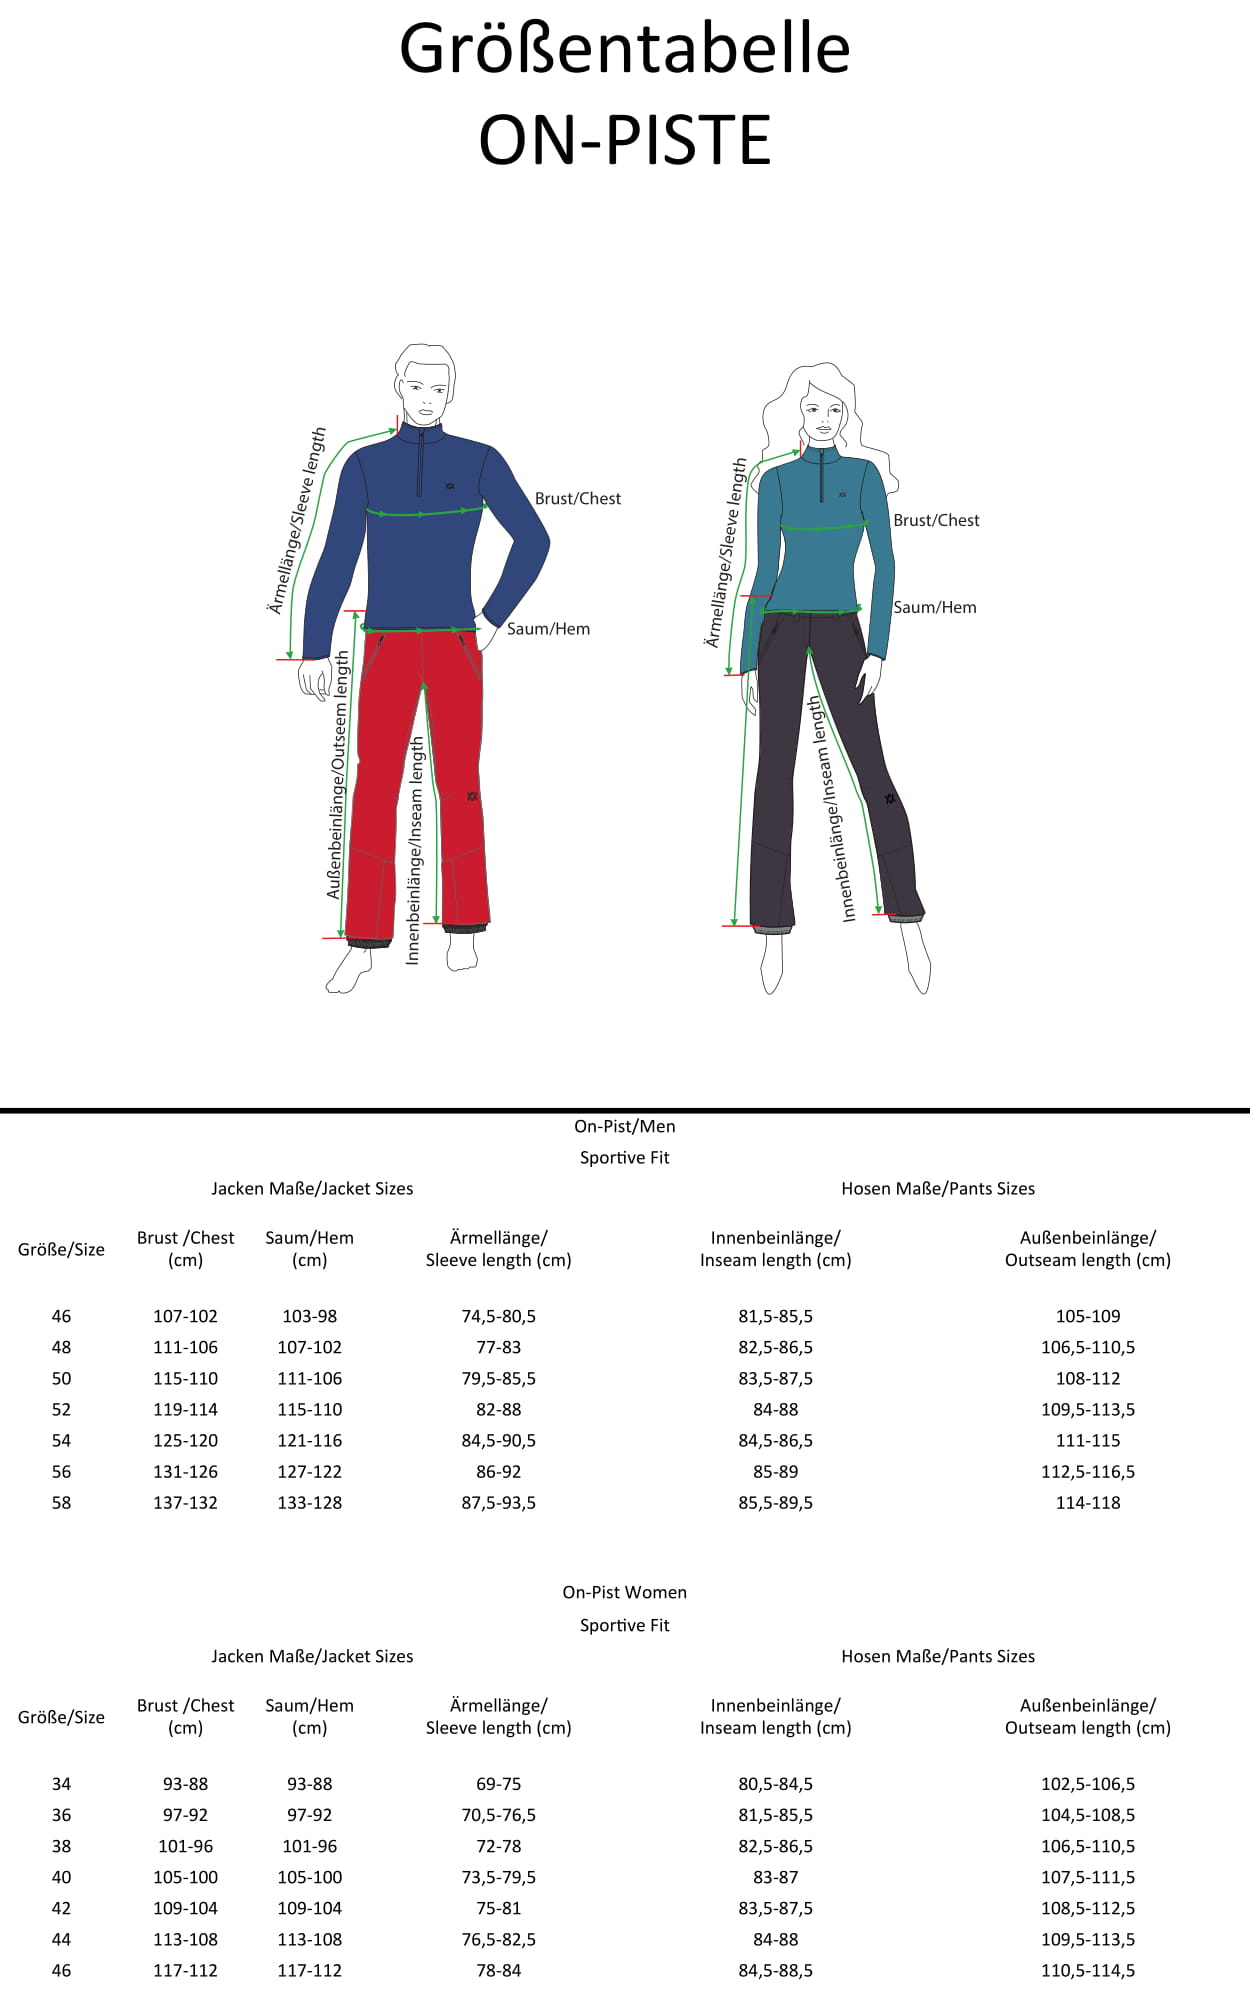 Volkl Ski Size Chart 2017